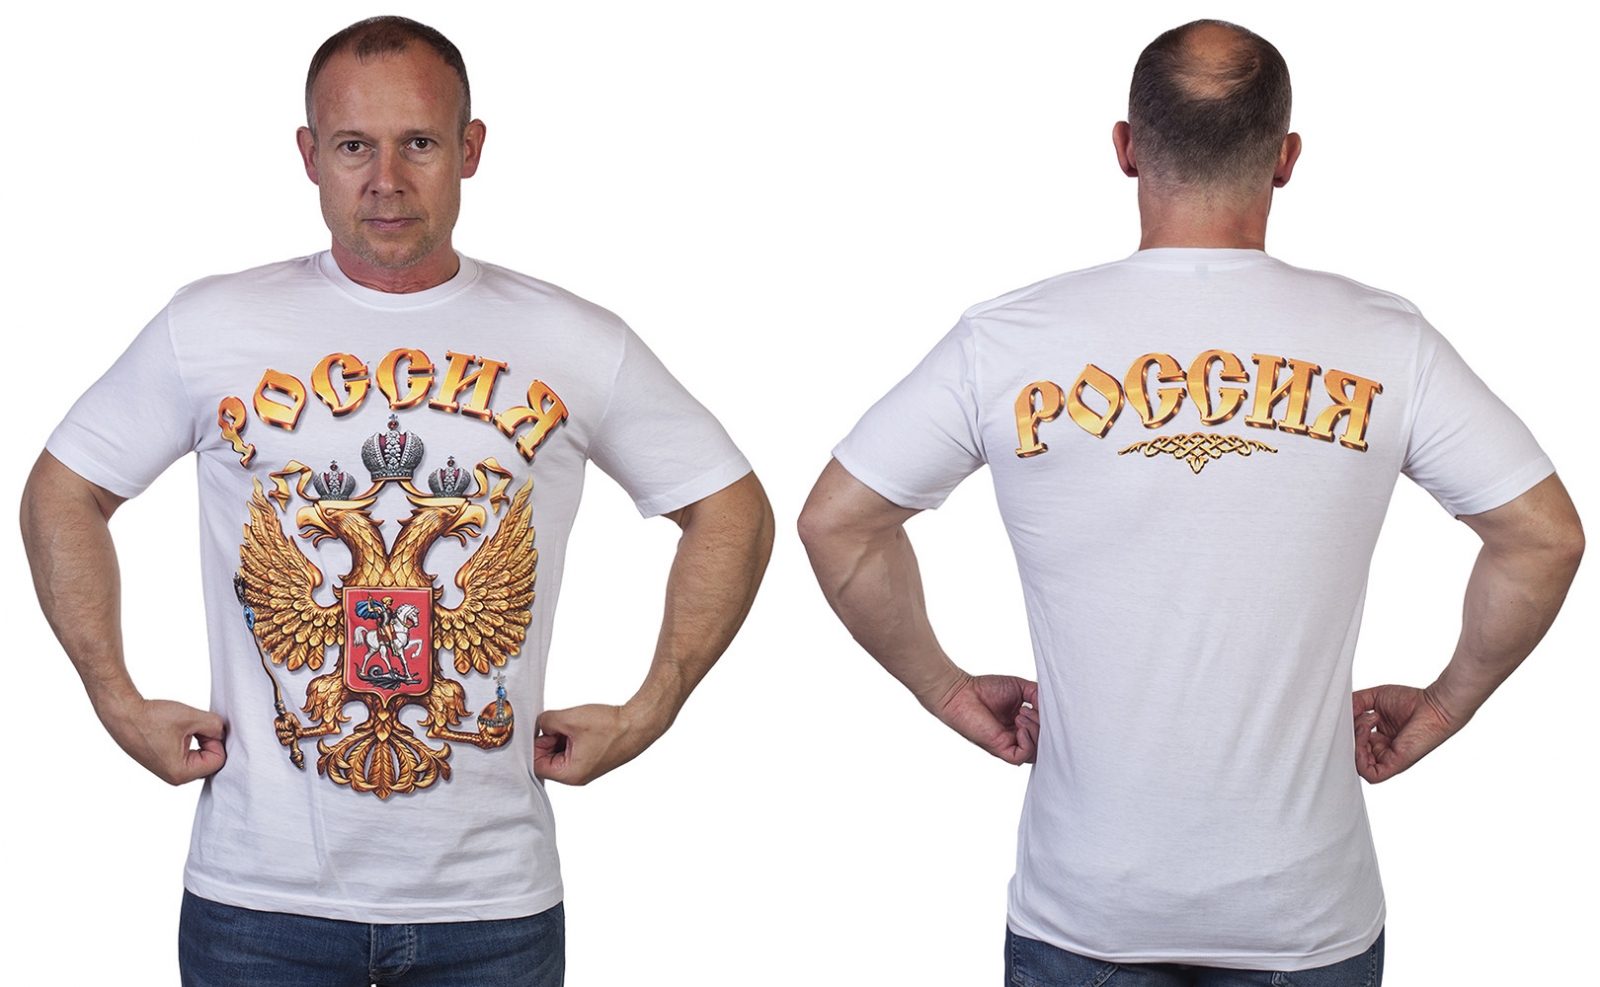 Заказать футболку с надписью "Россия" с доставкой по всей России и СНГ